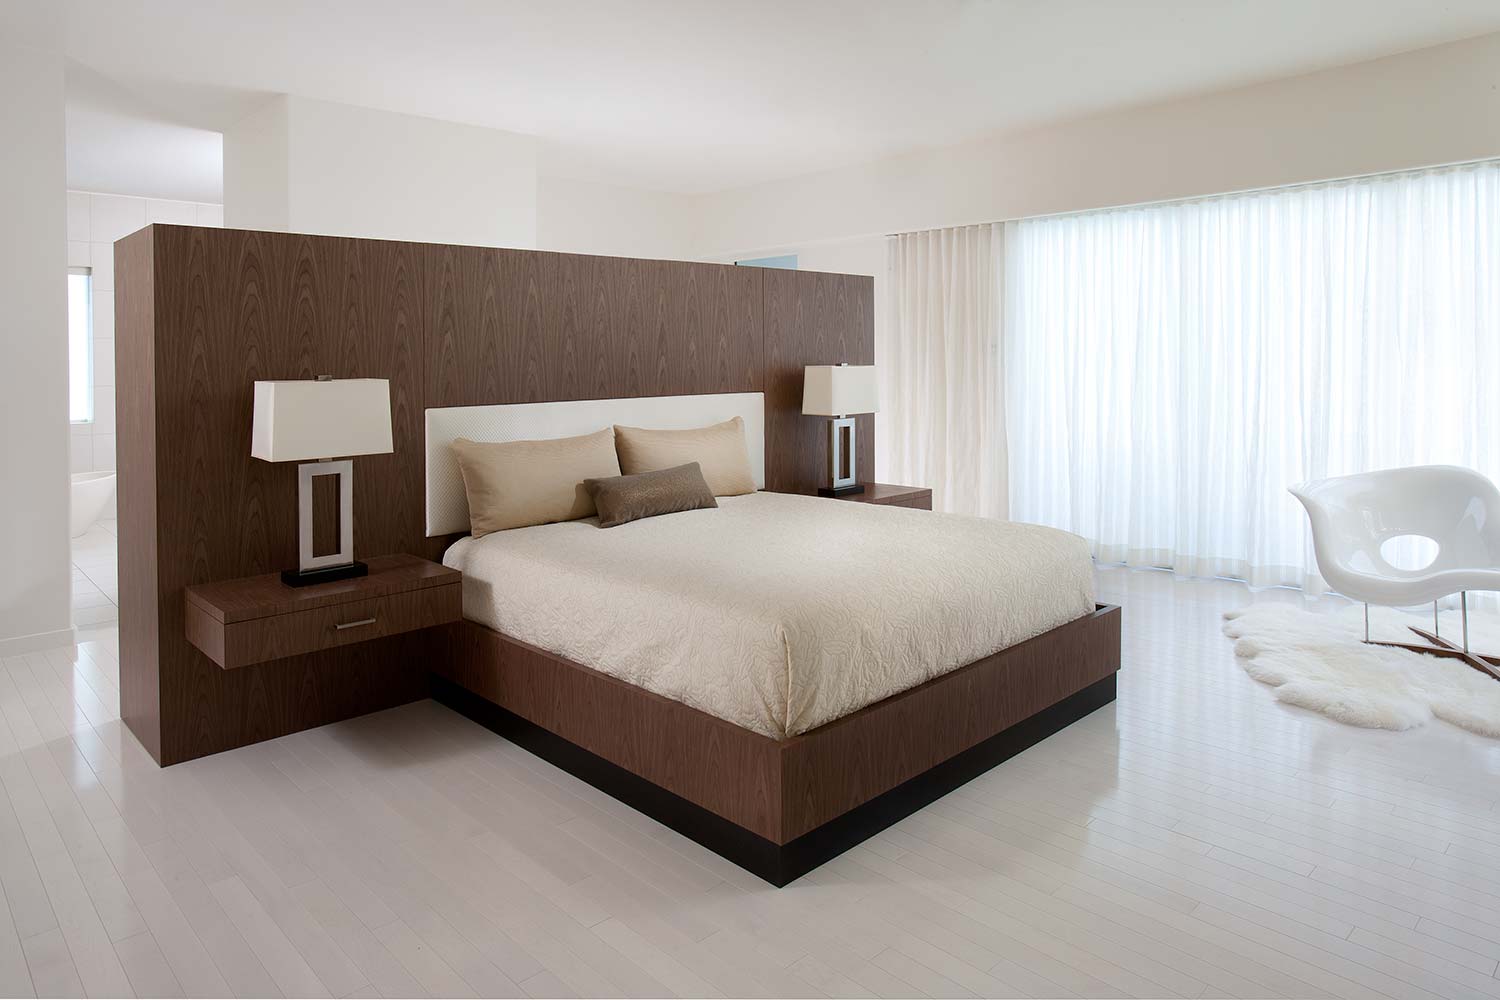 Custom Wood Bedroom Furniture